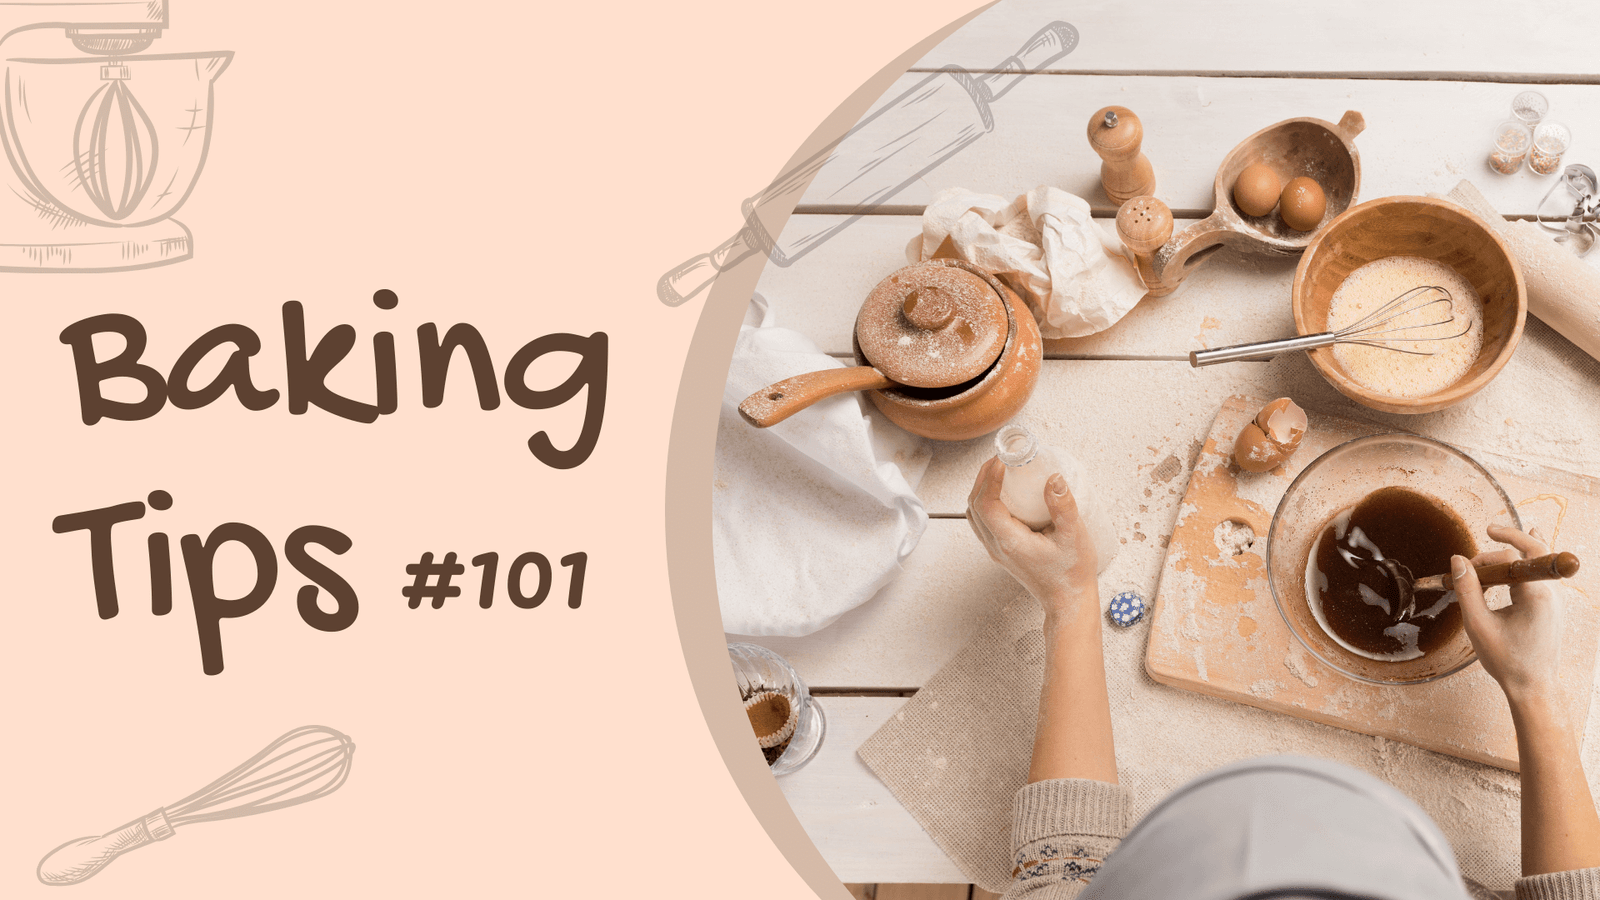 Baking tips for beginners